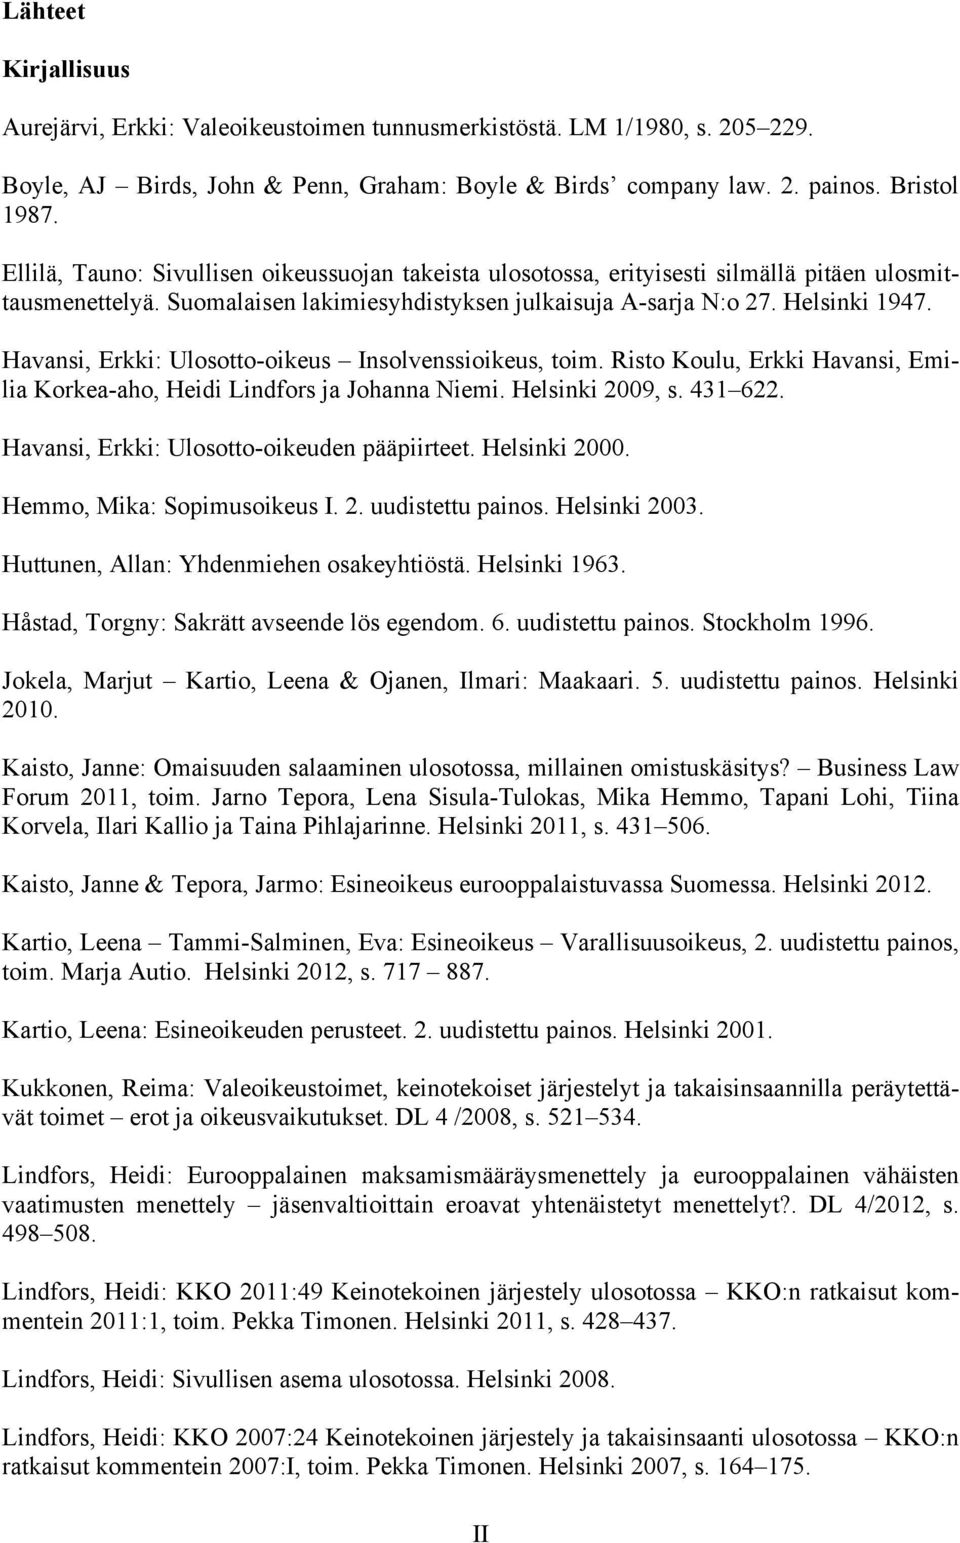 Havansi, Erkki: Ulosotto-oikeus Insolvenssioikeus, toim. Risto Koulu, Erkki Havansi, Emilia Korkea-aho, Heidi Lindfors ja Johanna Niemi. Helsinki 2009, s. 431 622.